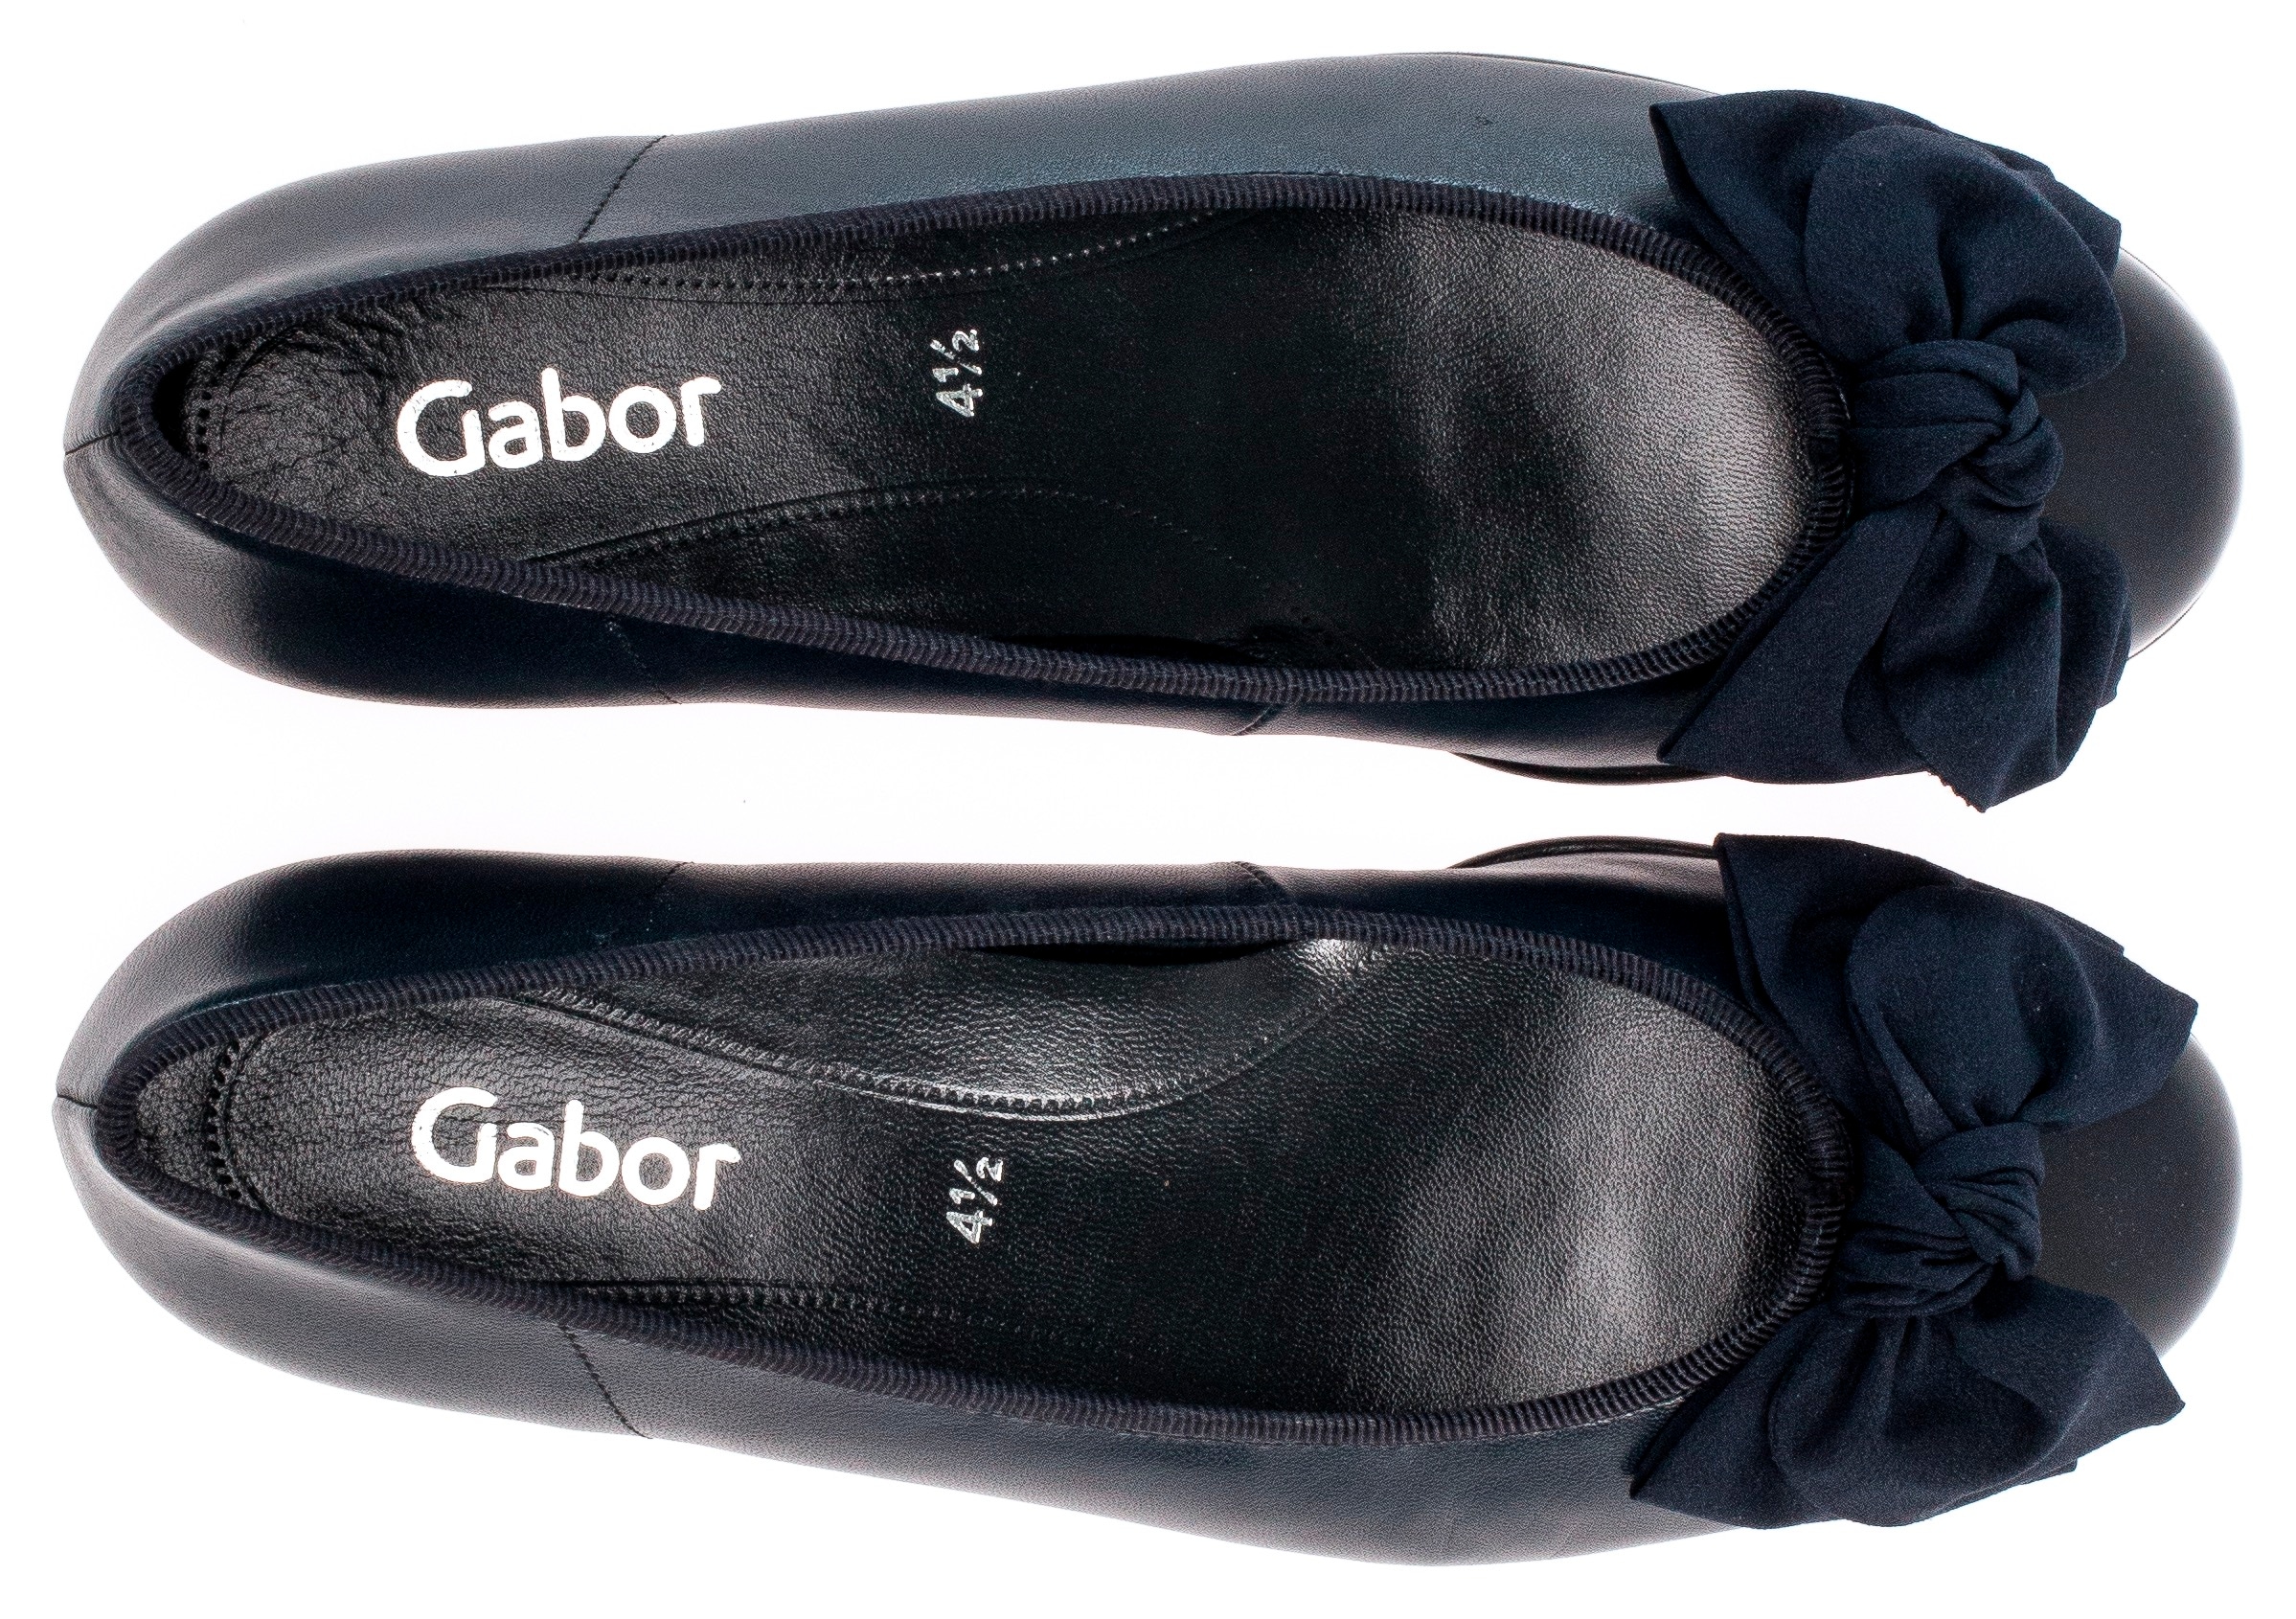 Gabor Ballerina, Flats, Kitten Heel, Festliche Schuhe mit aufwendiger Schleife